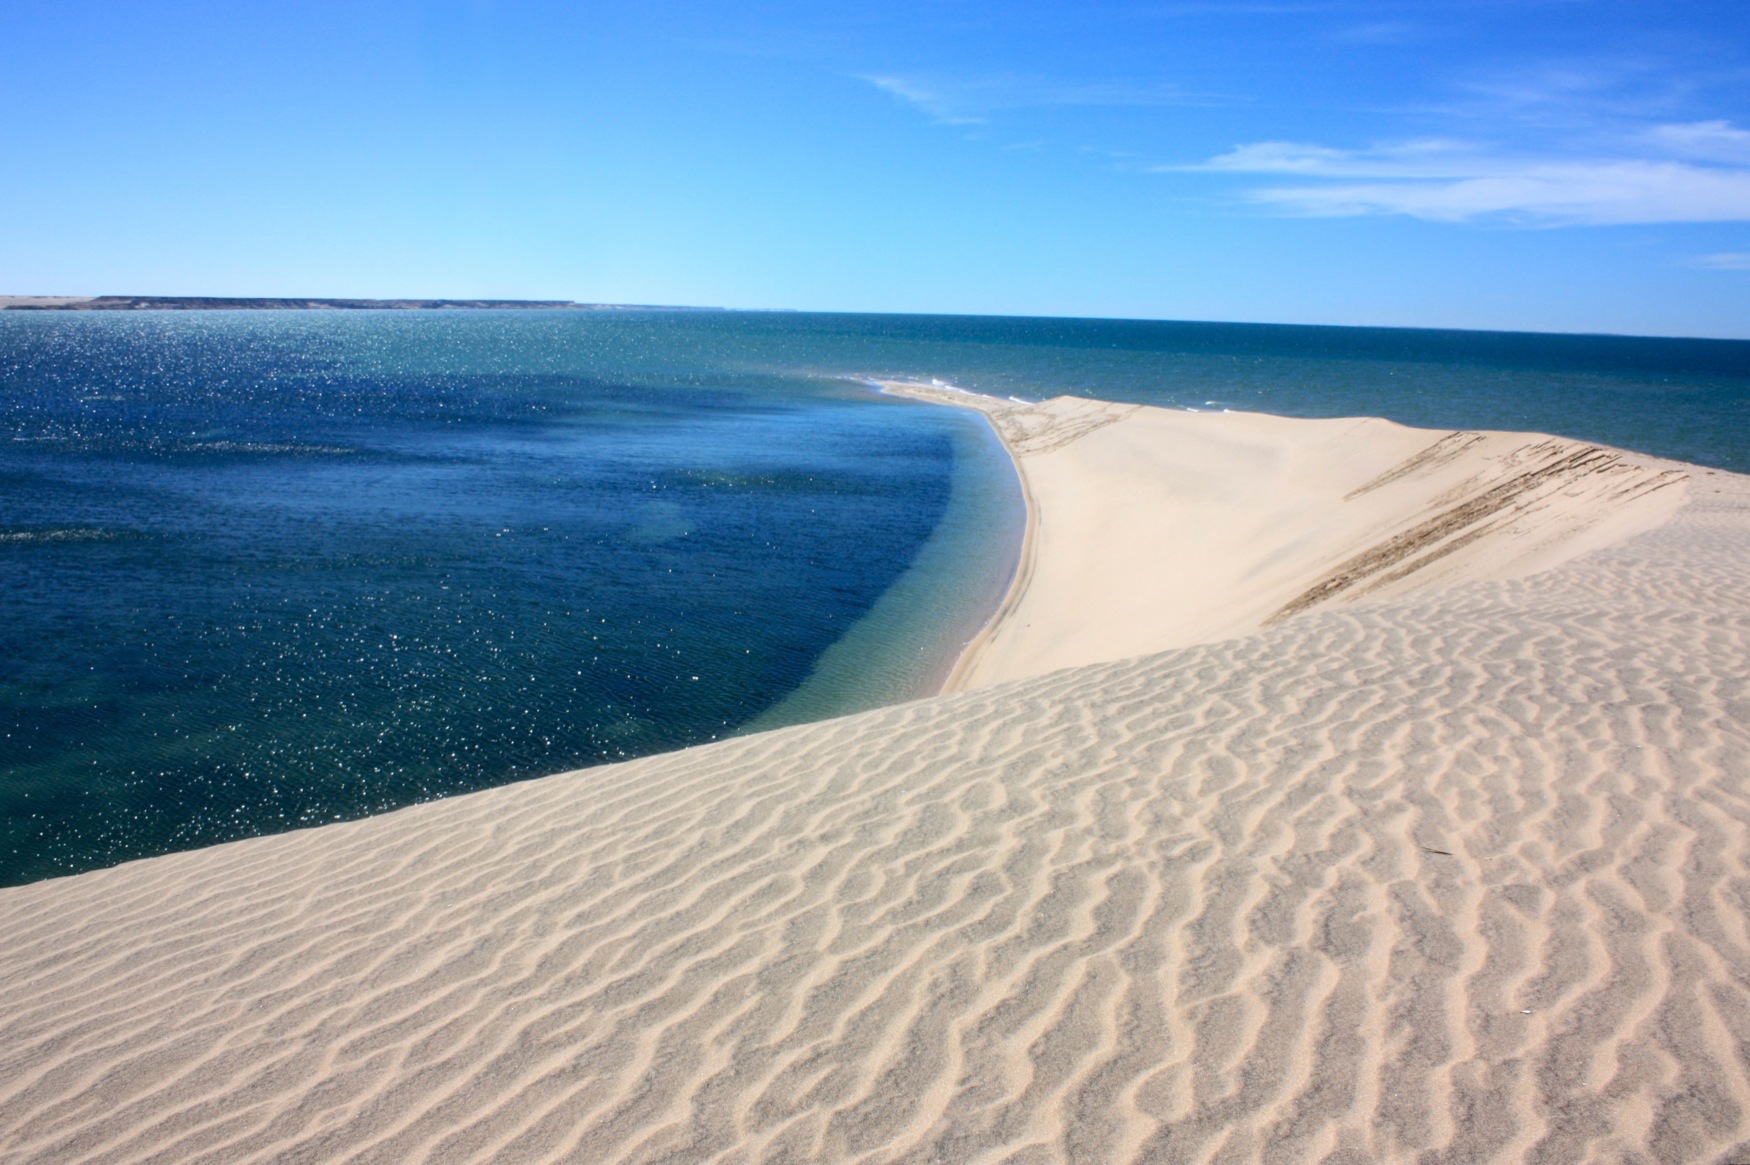 Les incontournables de Dakhla. La dune blanche dakhla